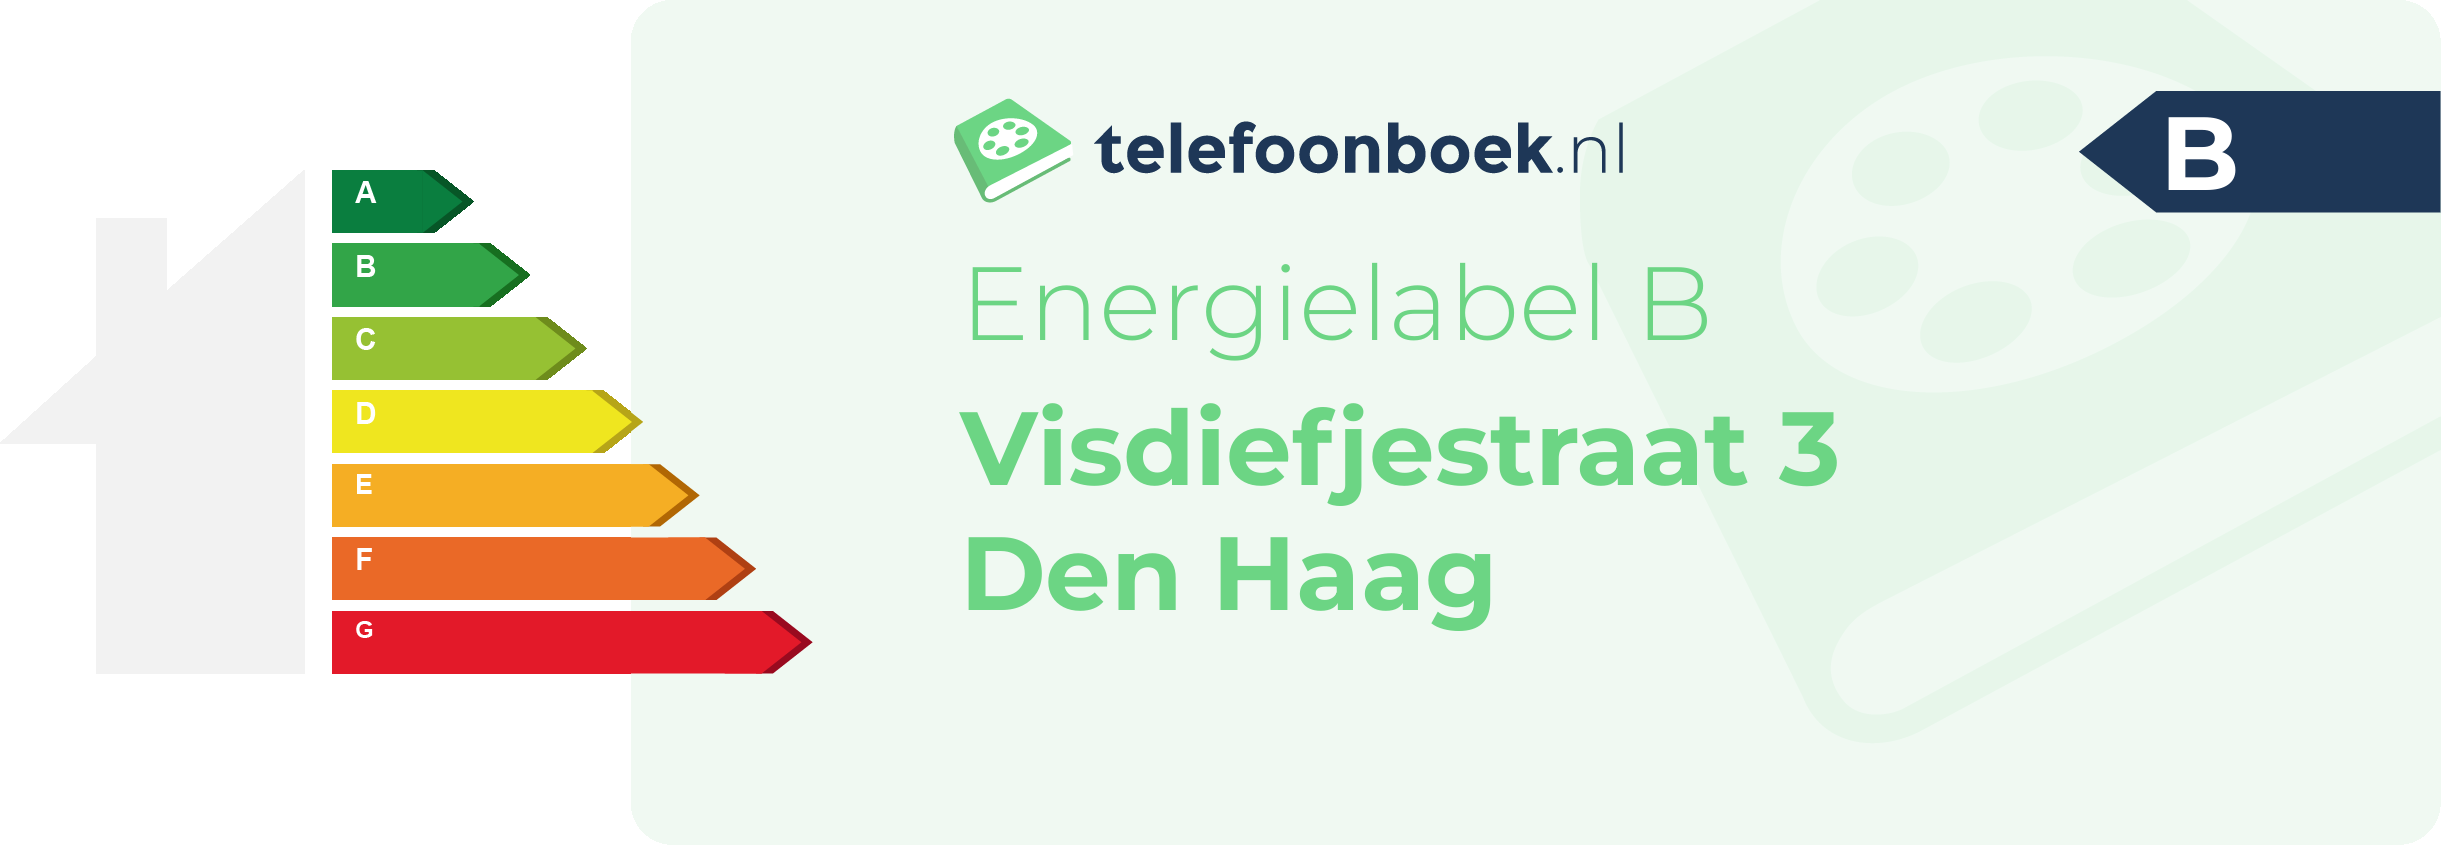 Energielabel Visdiefjestraat 3 Den Haag